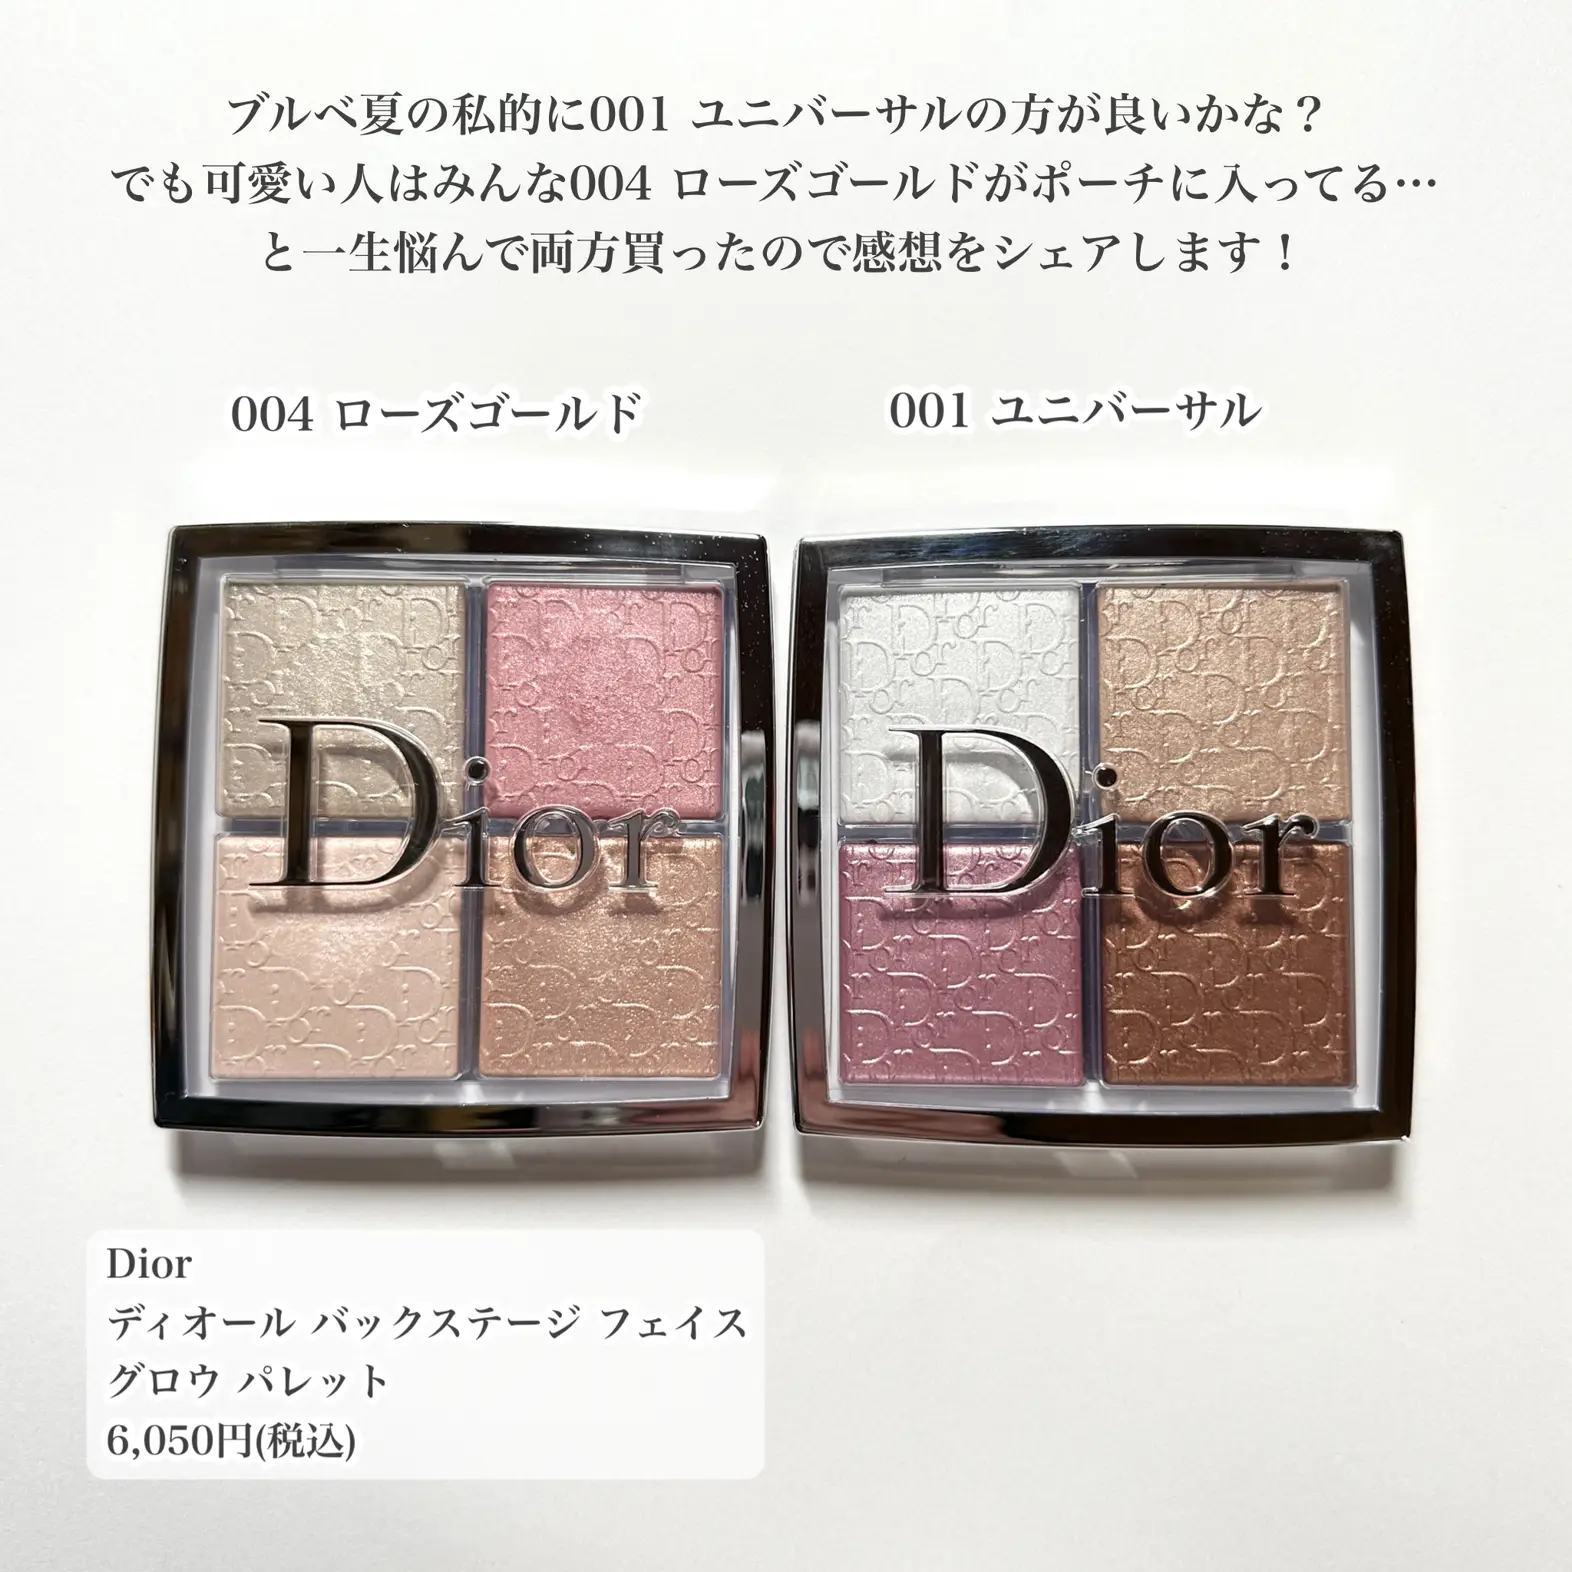 Dior ハイライト 004 ローズゴールド - フェイスカラー